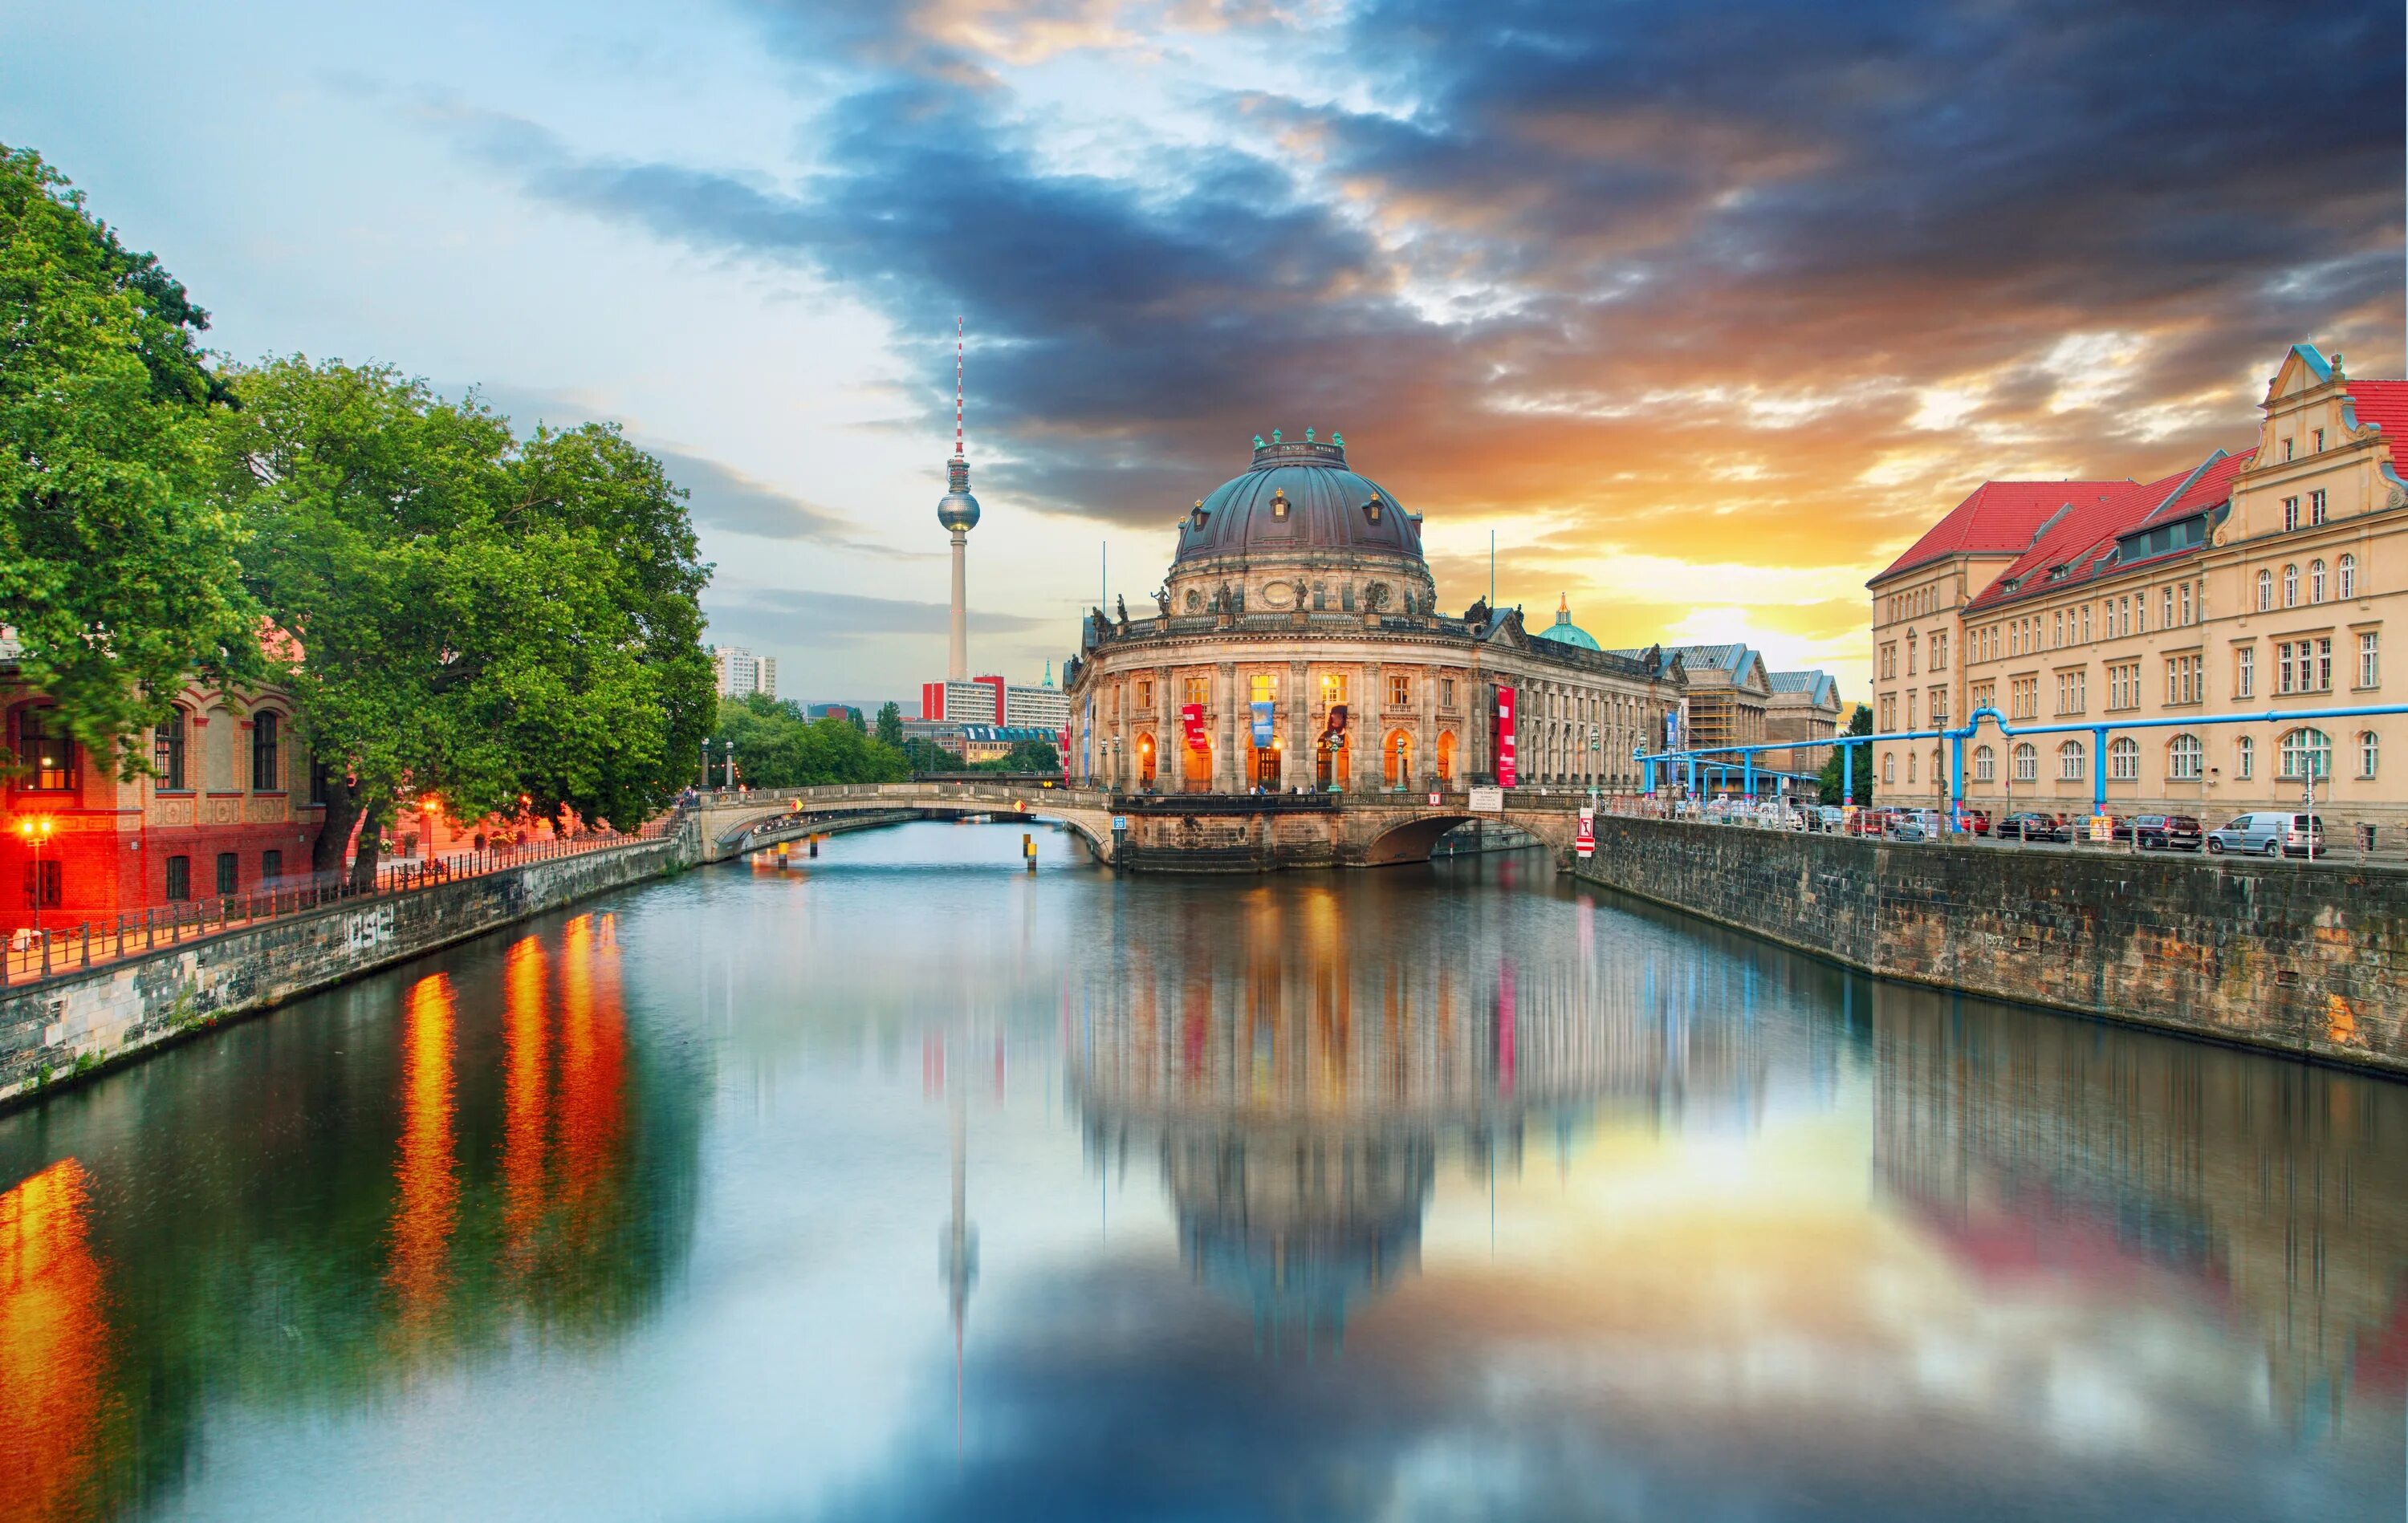 Берлинская река 4. Река Шпрее в Берлине. Германия Берлин. Берлин река панорама. Музейный остров (г. Берлин).